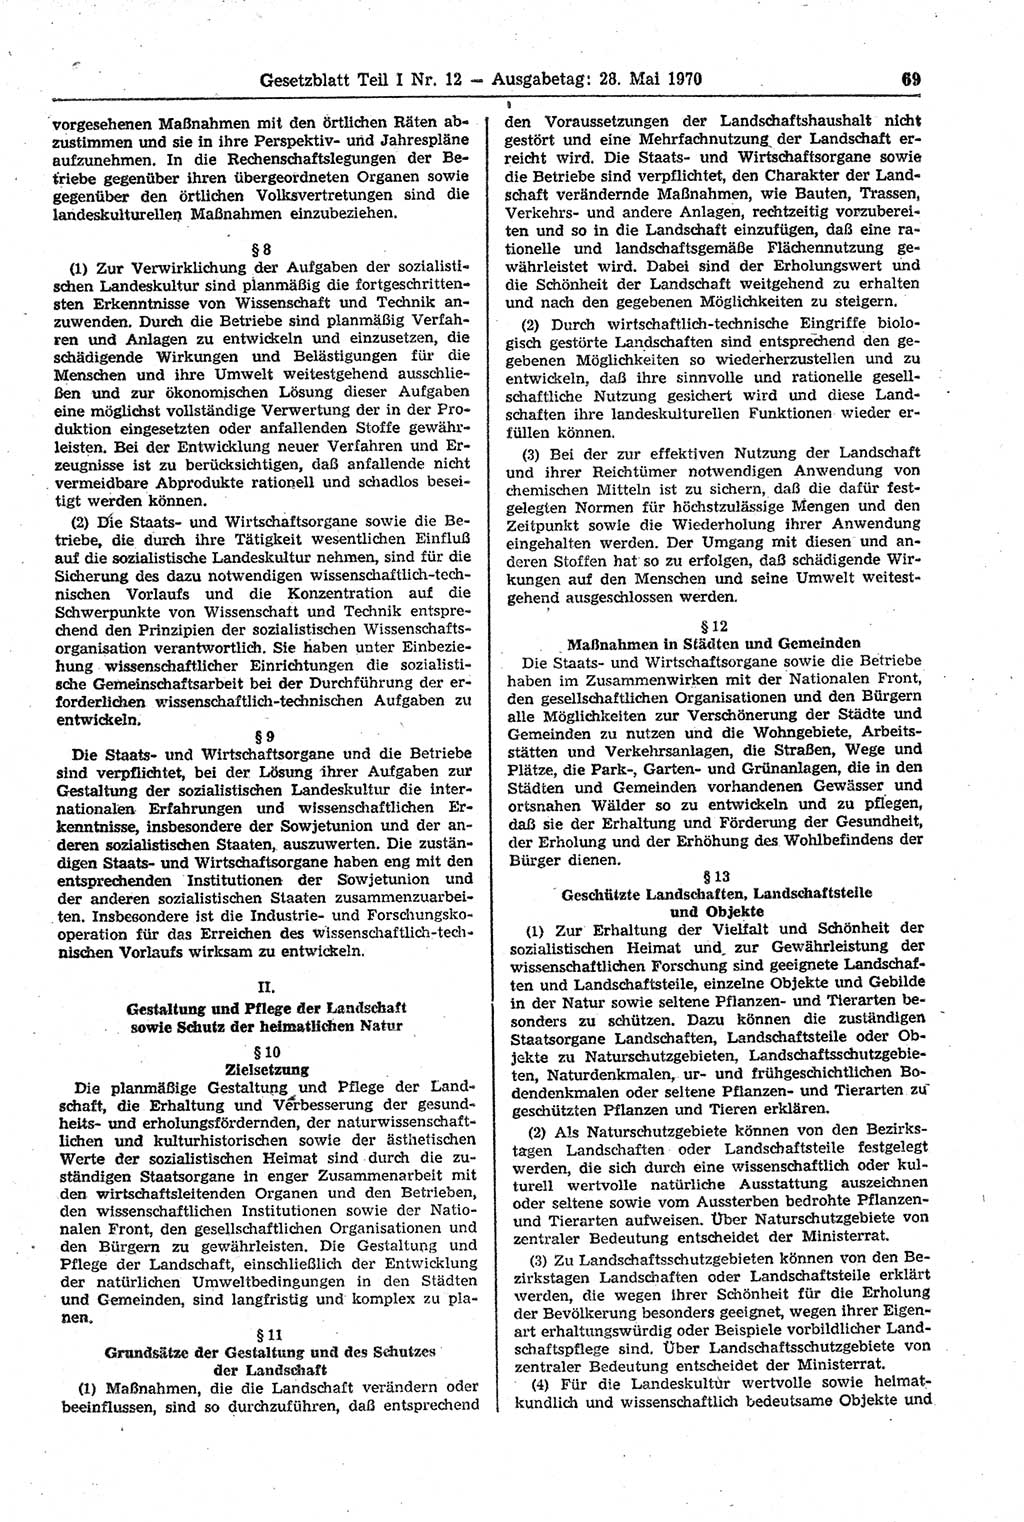 Gesetzblatt (GBl.) der Deutschen Demokratischen Republik (DDR) Teil Ⅰ 1970, Seite 69 (GBl. DDR Ⅰ 1970, S. 69)